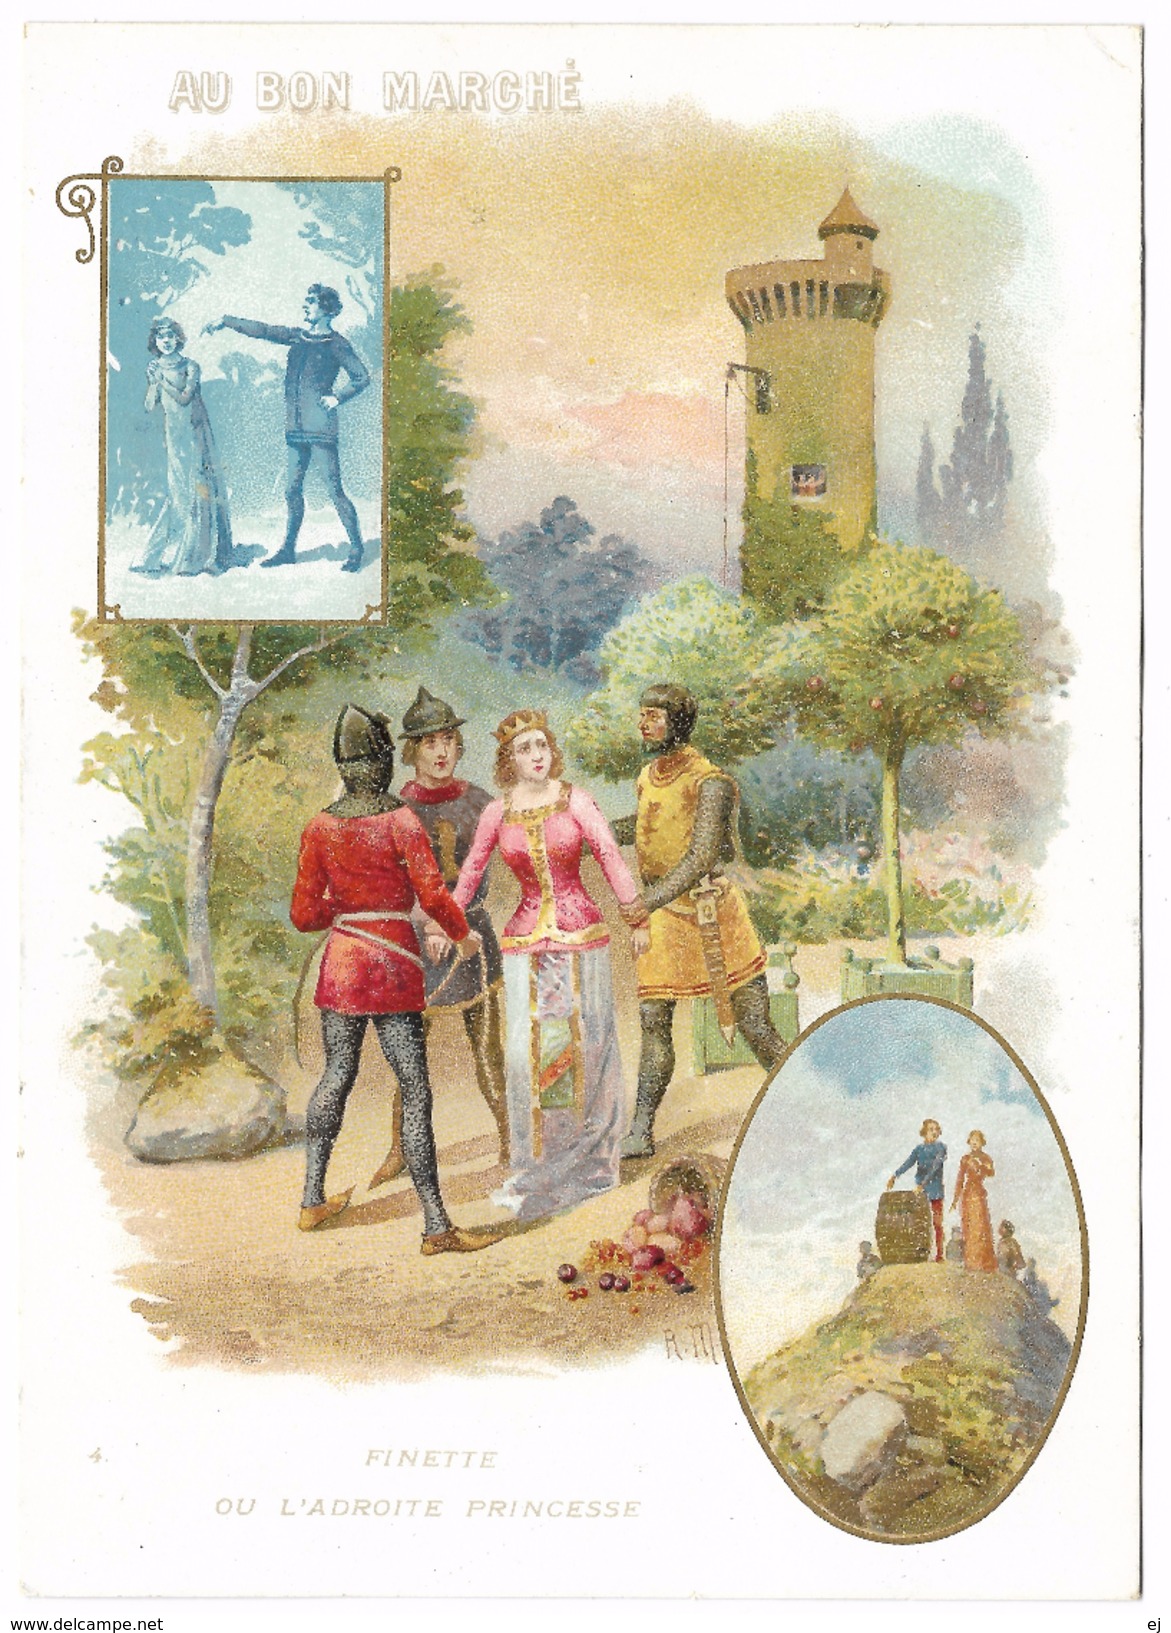 Finette ou L'Adroite princess - 6 grands chromos - serie complete - autour de 1900